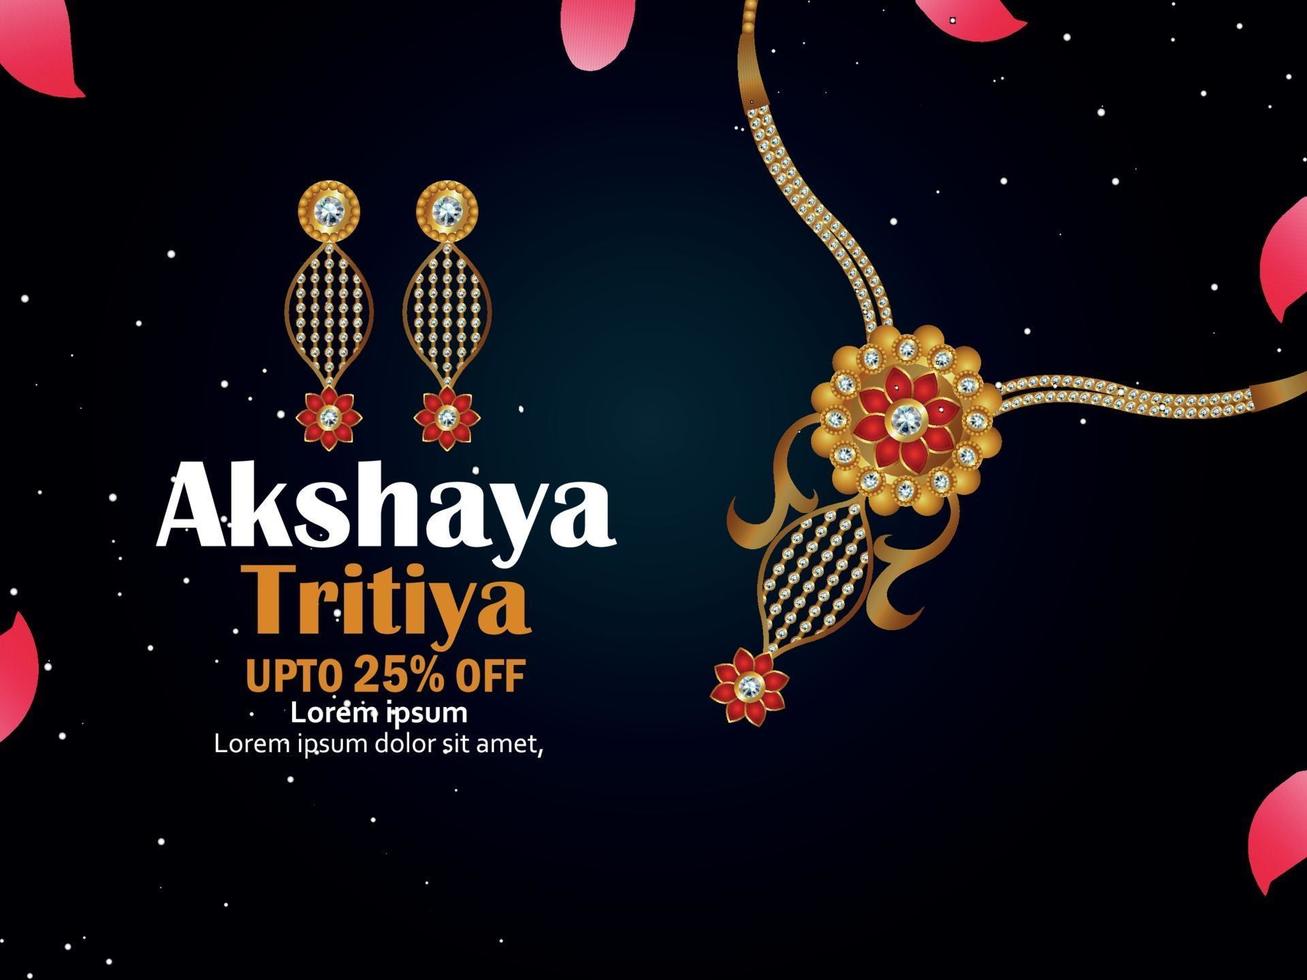 ilustração em vetor de joias de celebração akshaya tritiya. cartão de promoção de venda com colar e brincos criativos